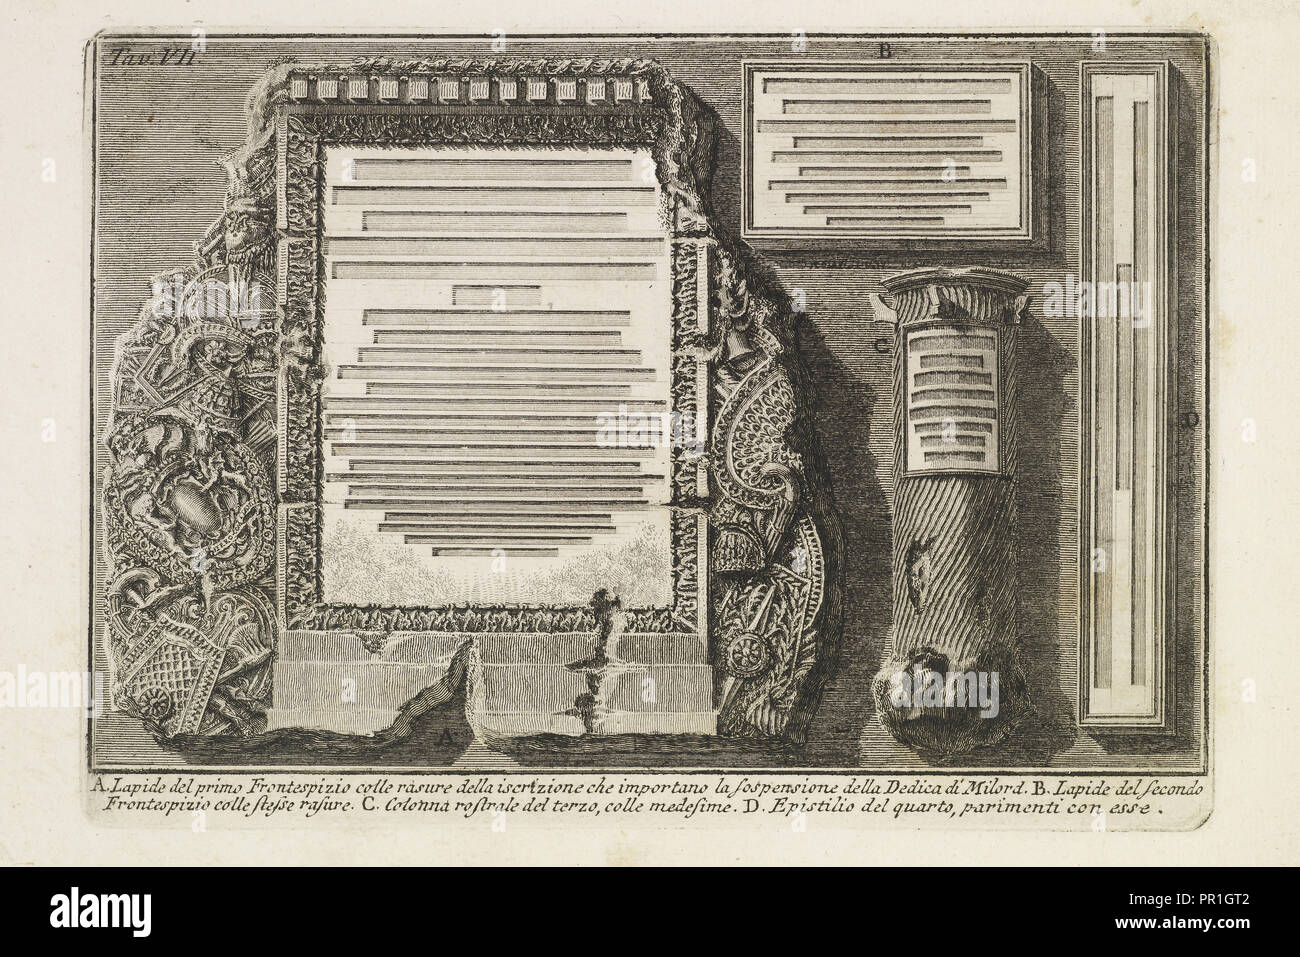 Lapide del primo frontespizio, Lettere di givstificazione, Piranesi, Giovanni Battista, 1720-1778, Etching, 1757 Stock Photo